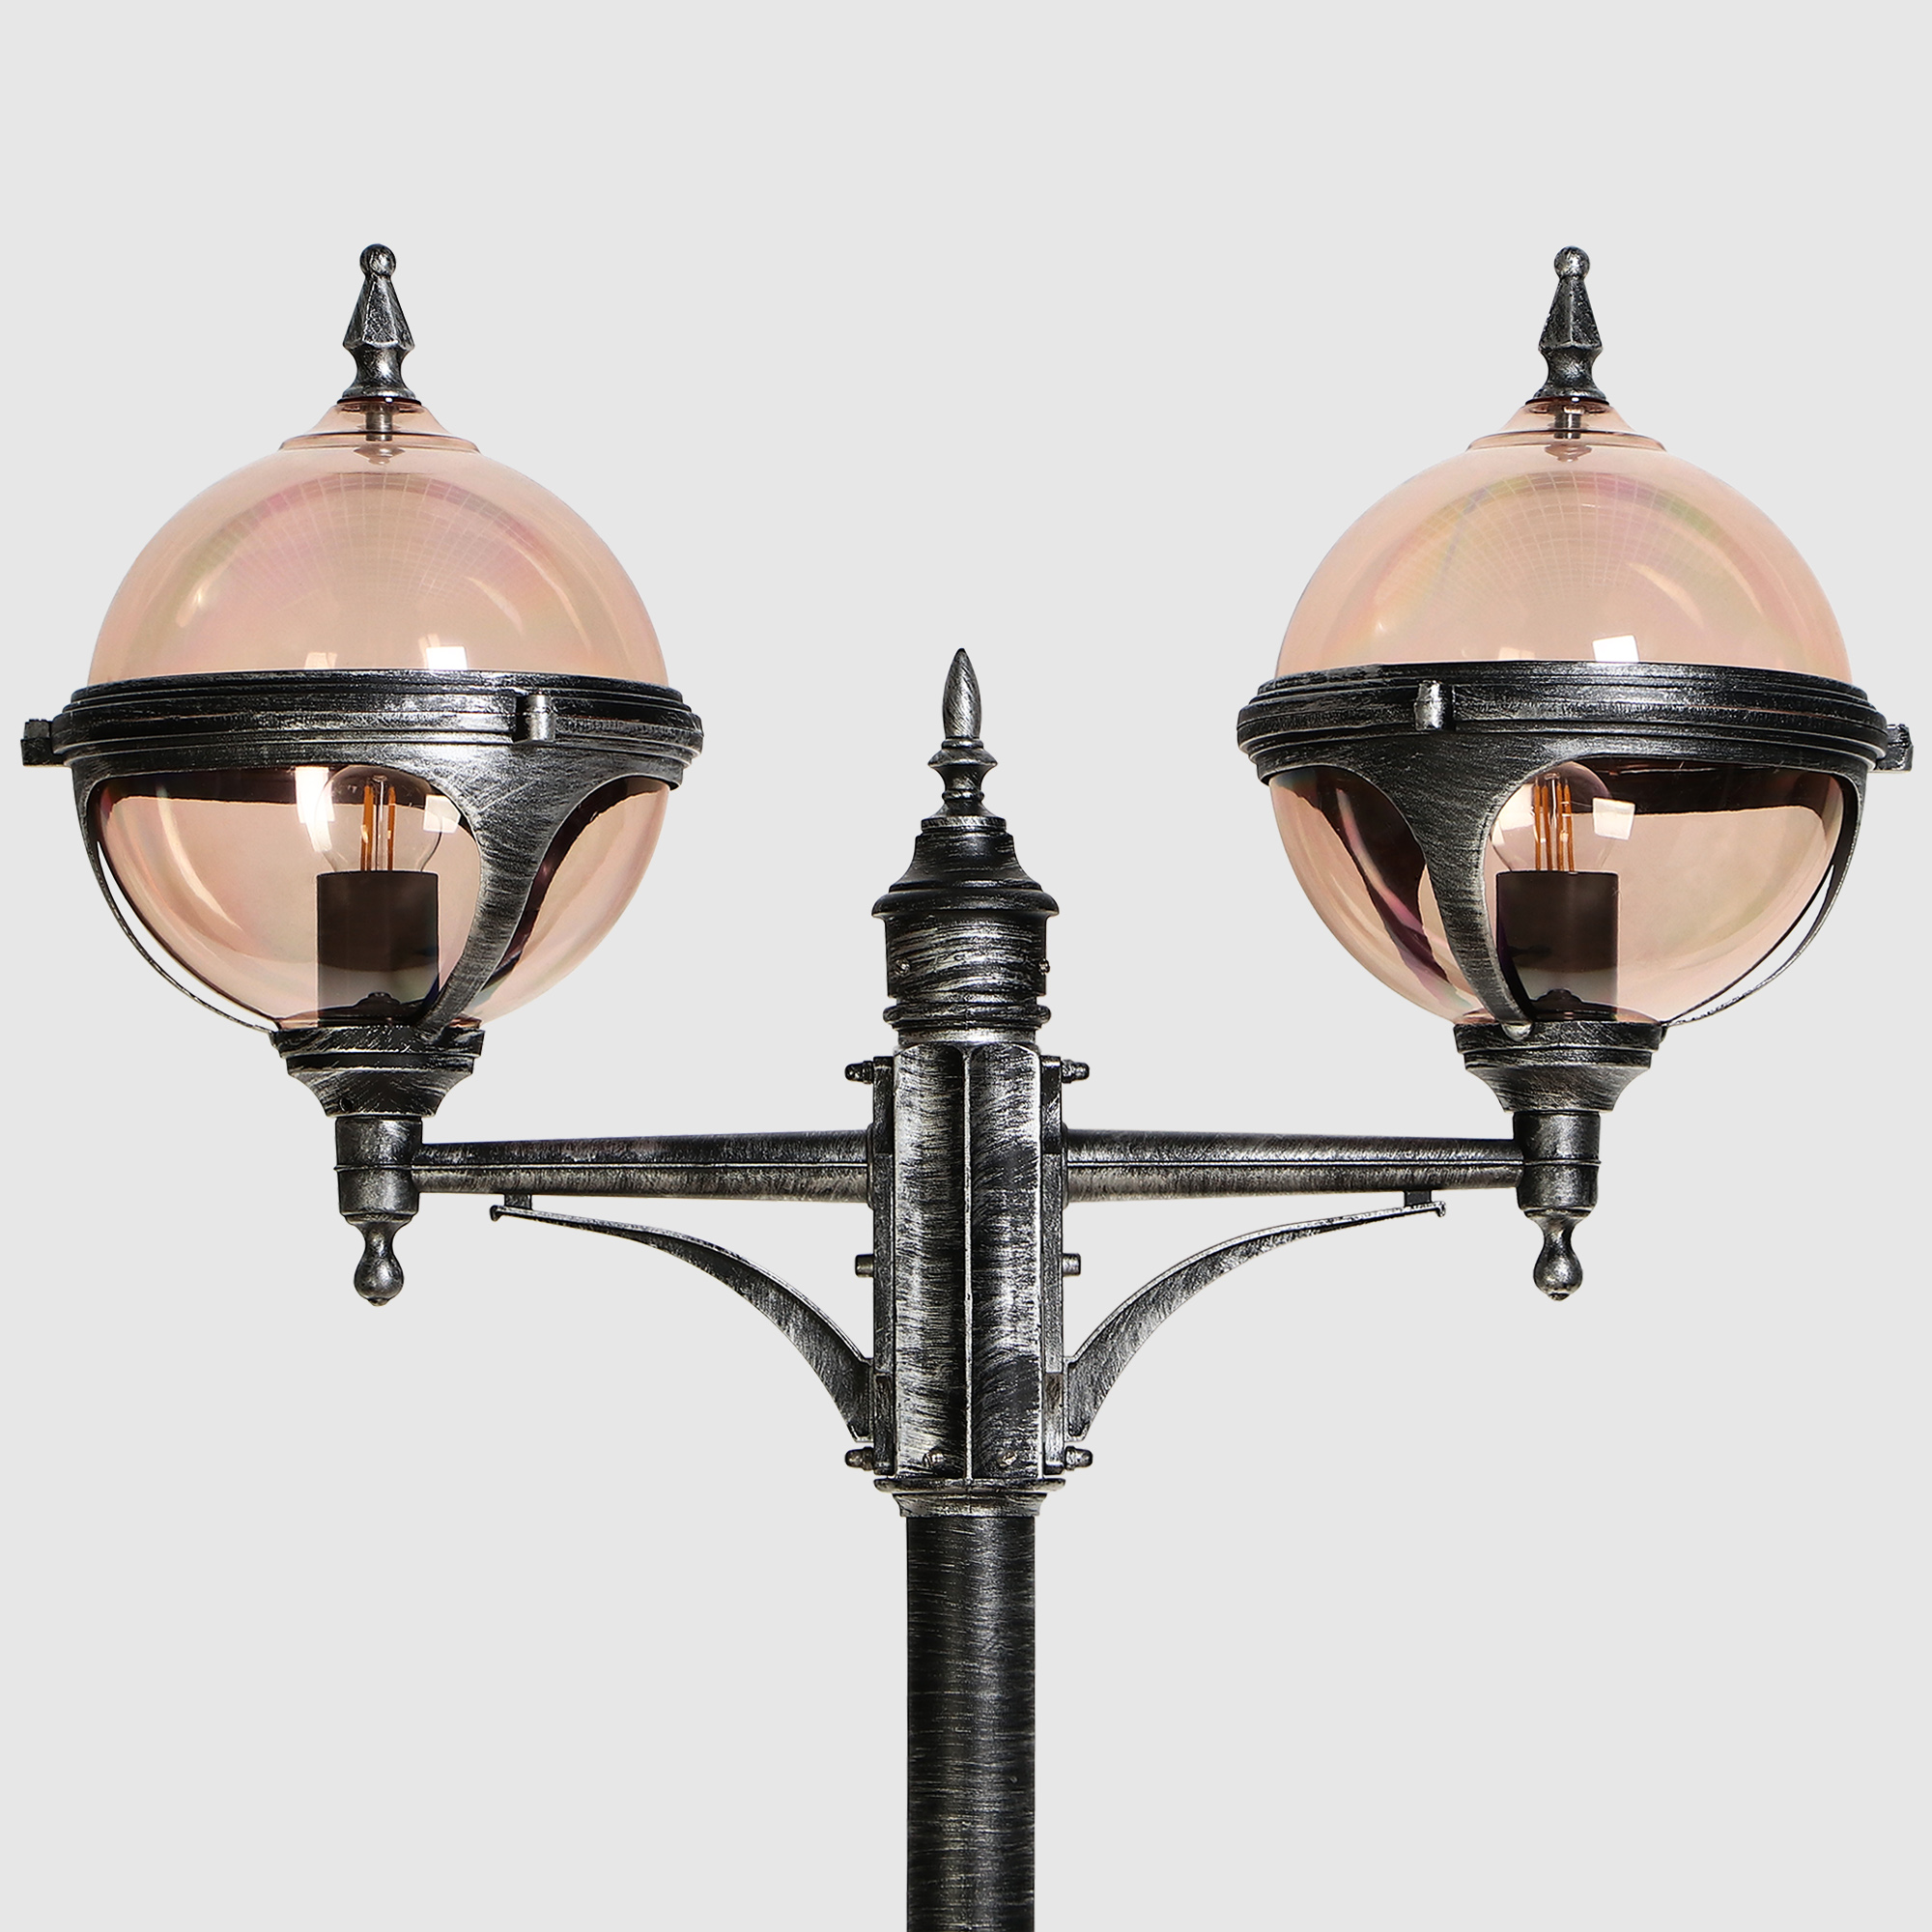 Светильник садовый Amber Lamp 9122B напольный IP44 E27 100Вт, черное серебро, цвет черное серебро, прозрачный - фото 3